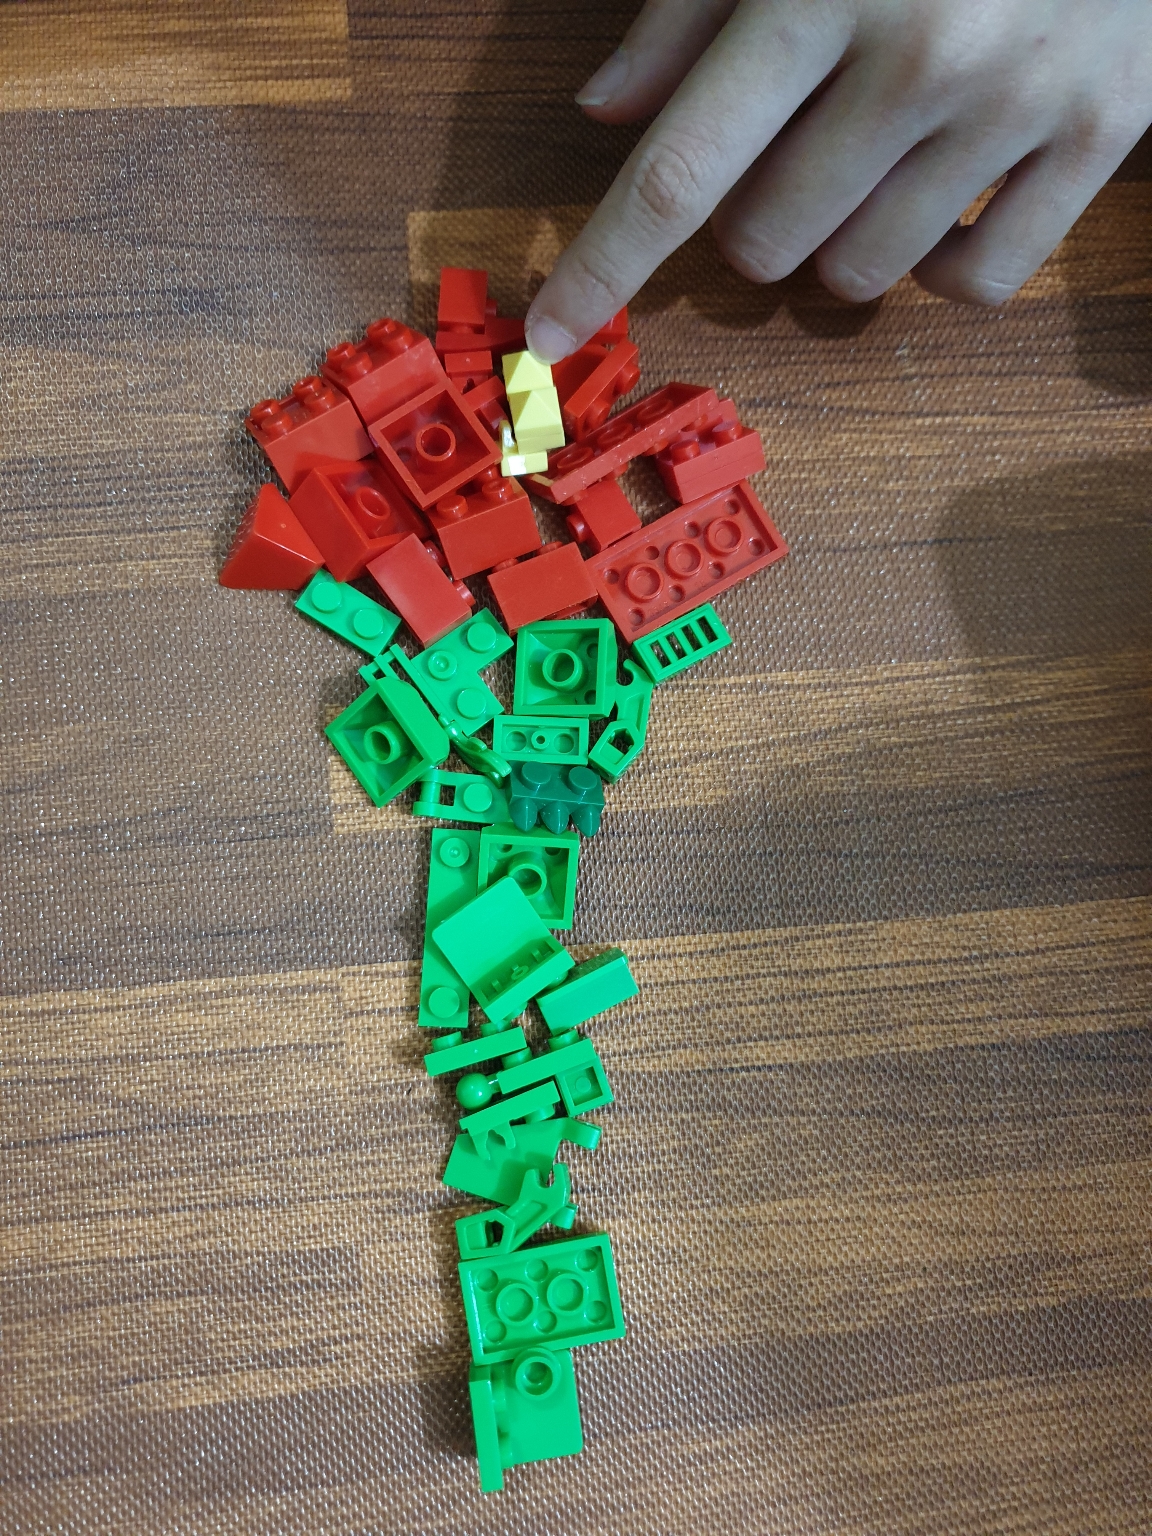 Kết quả của con gái khi bố cho đề bài lắp lego hình bông hoa hồng ....